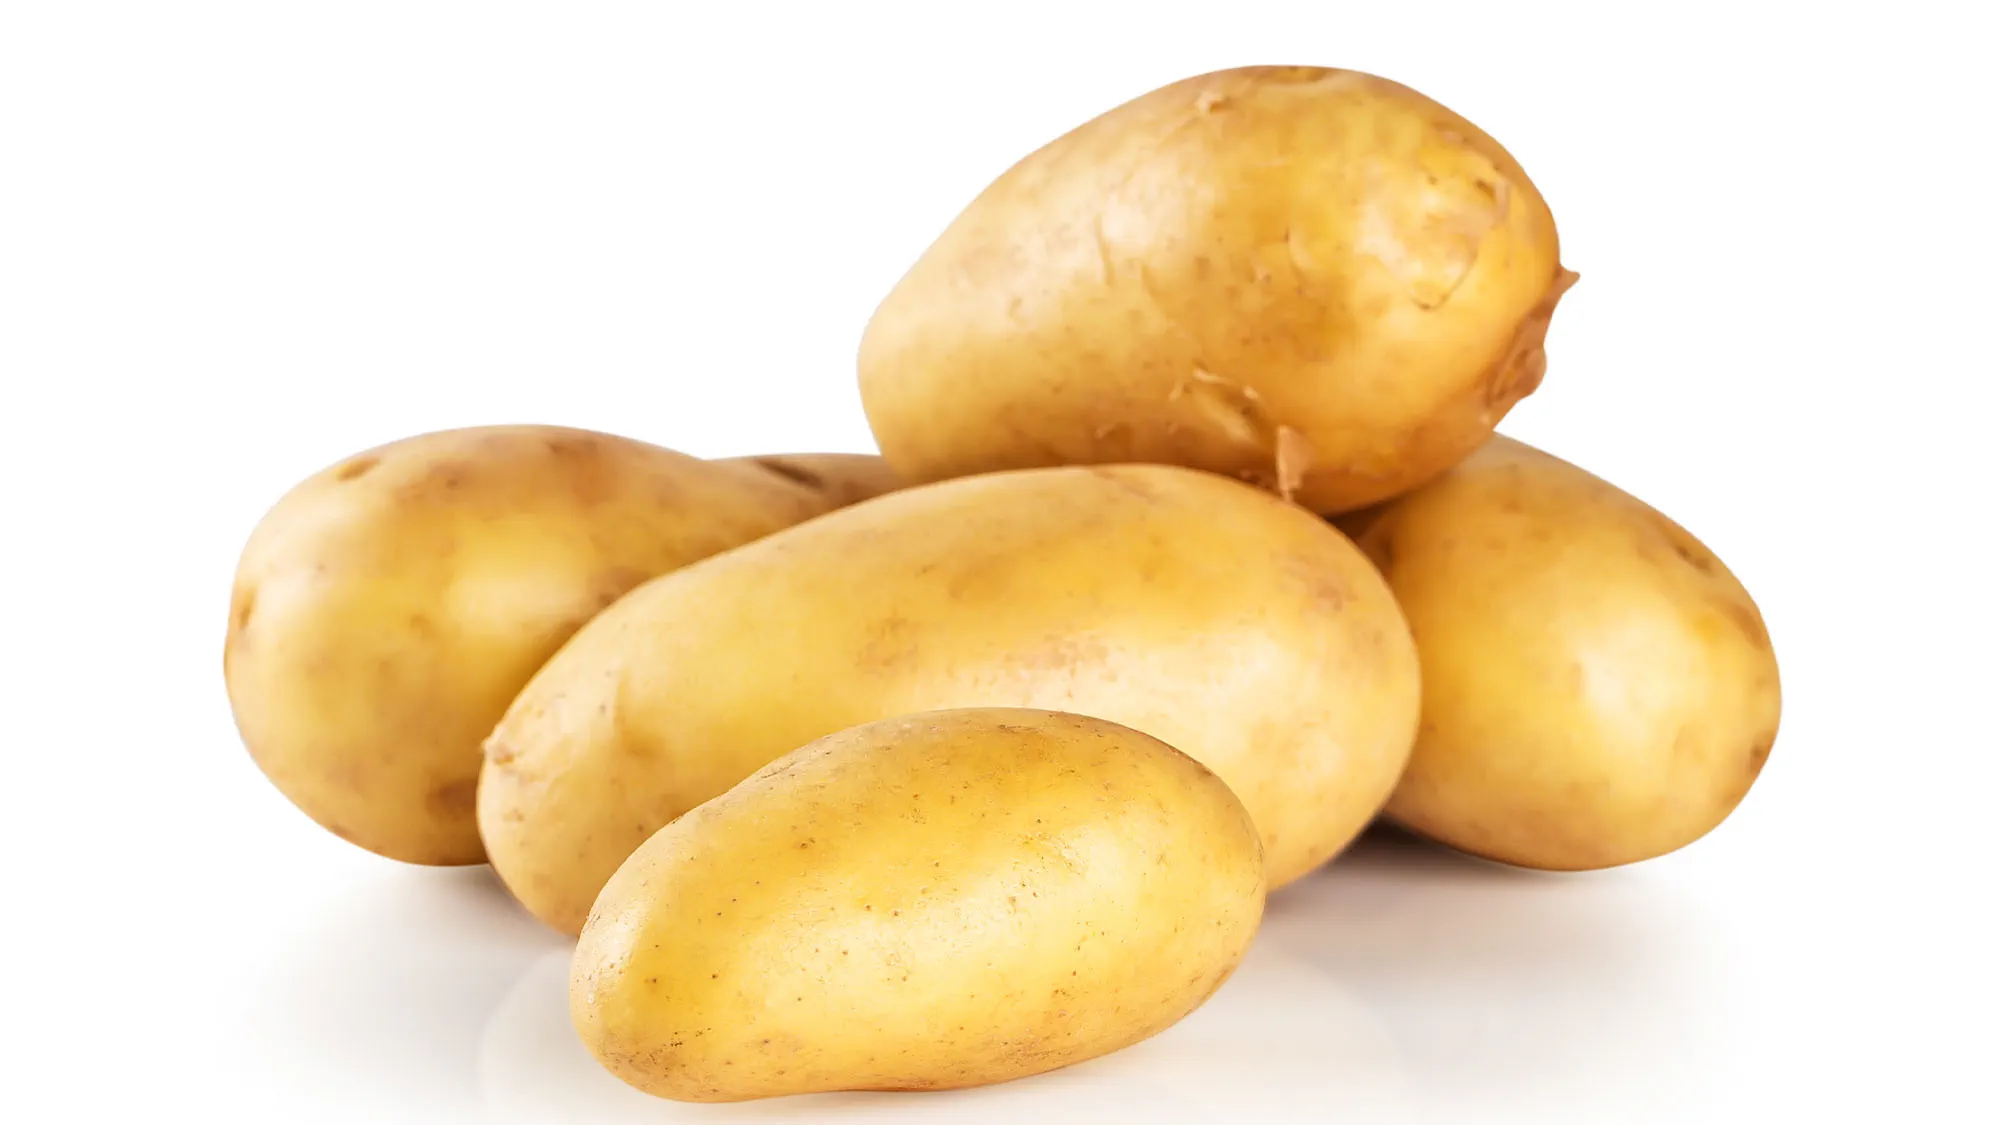 Aardappel kruiden: welke kruiden en specerijen kun je gebruiken?